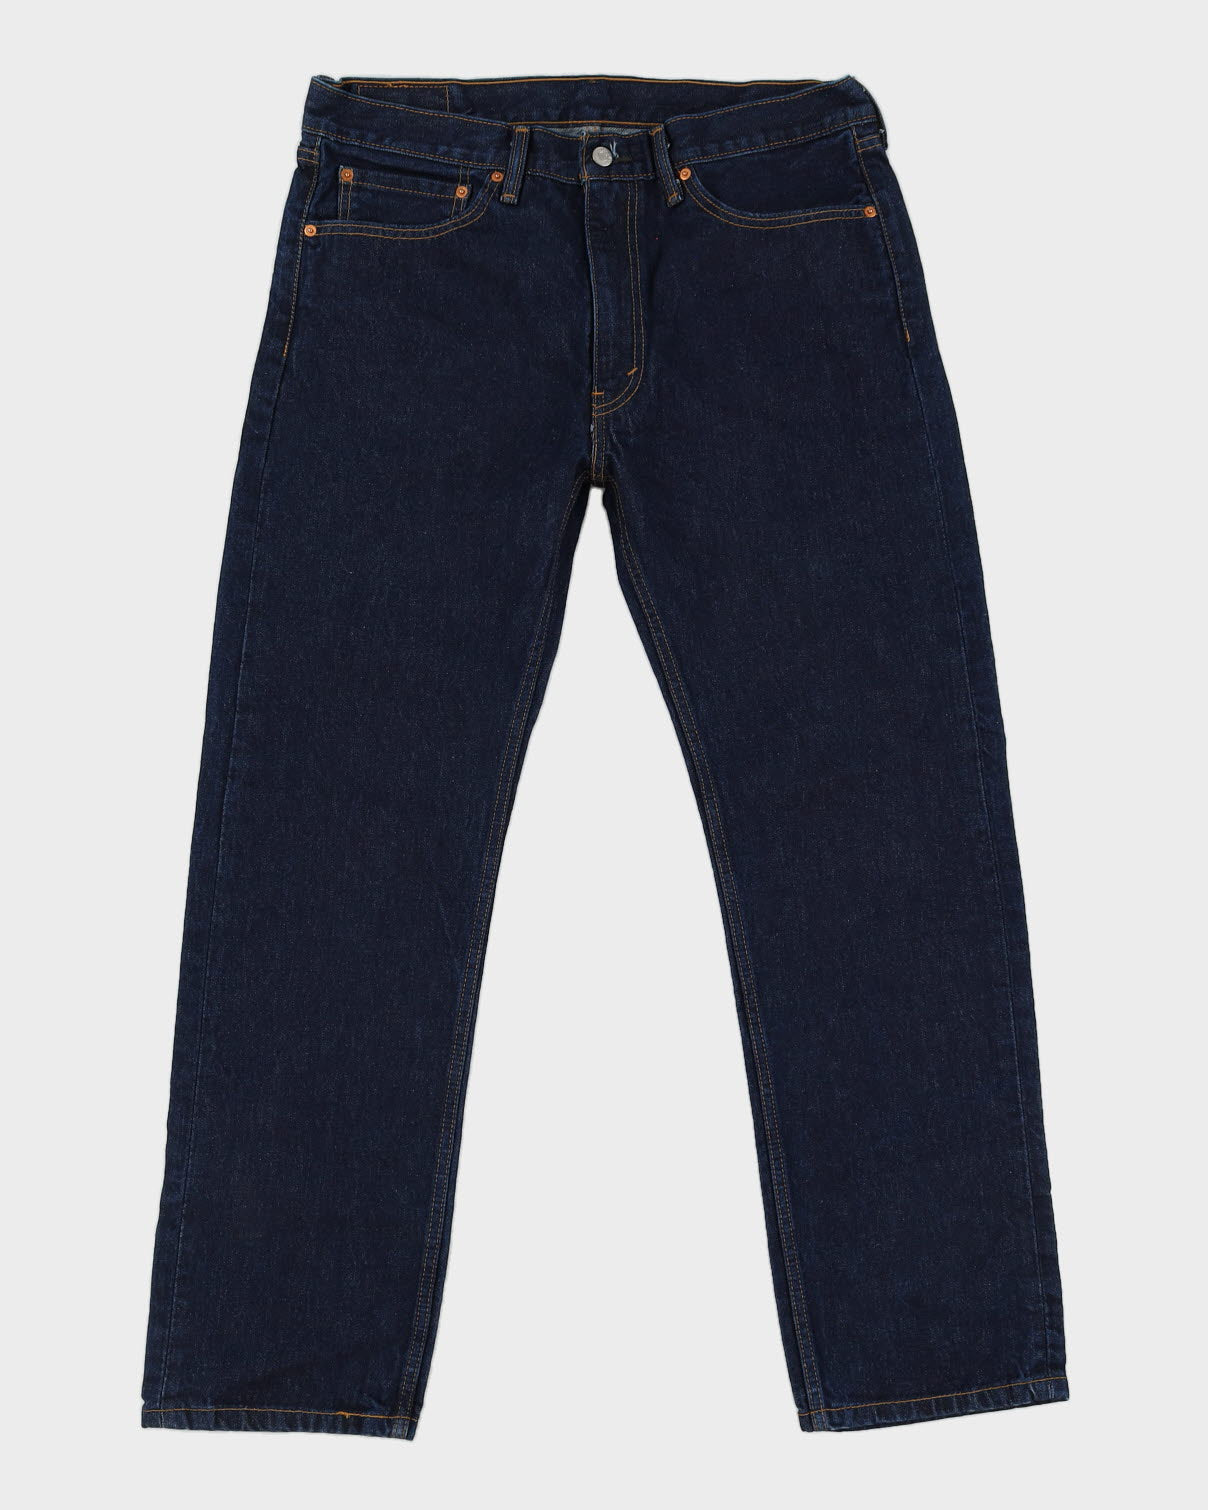 Levi's 505 Blue Jeans - W36 L32